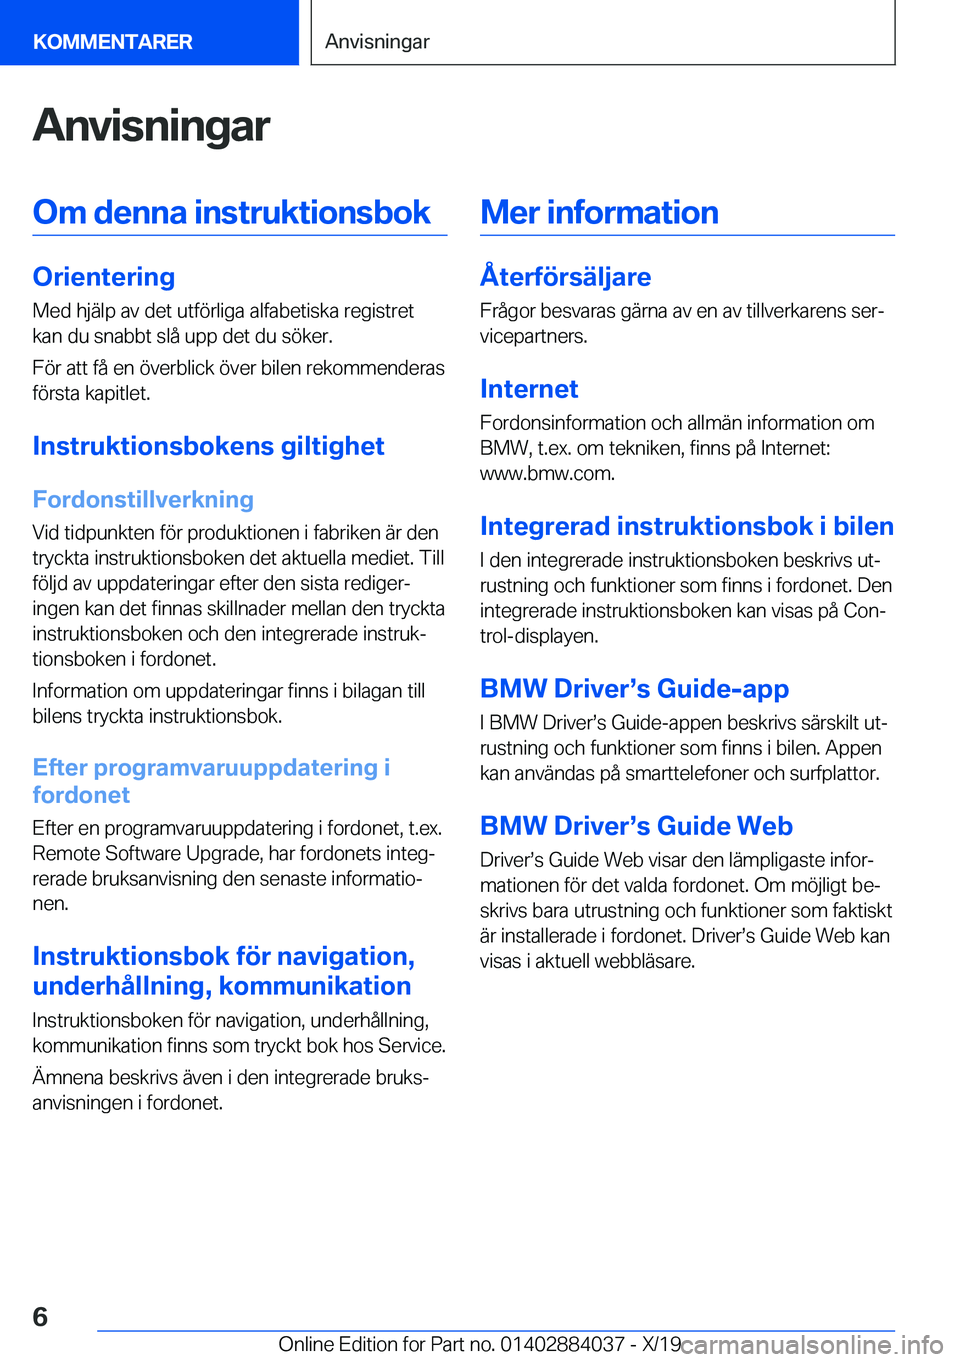 BMW 7 SERIES 2020  InstruktionsbÖcker (in Swedish) �A�n�v�i�s�n�i�n�g�a�r�O�m��d�e�n�n�a��i�n�s�t�r�u�k�t�i�o�n�s�b�o�k
�O�r�i�e�n�t�e�r�i�n�g
�M�e�d��h�j�ä�l�p��a�v��d�e�t��u�t�f�